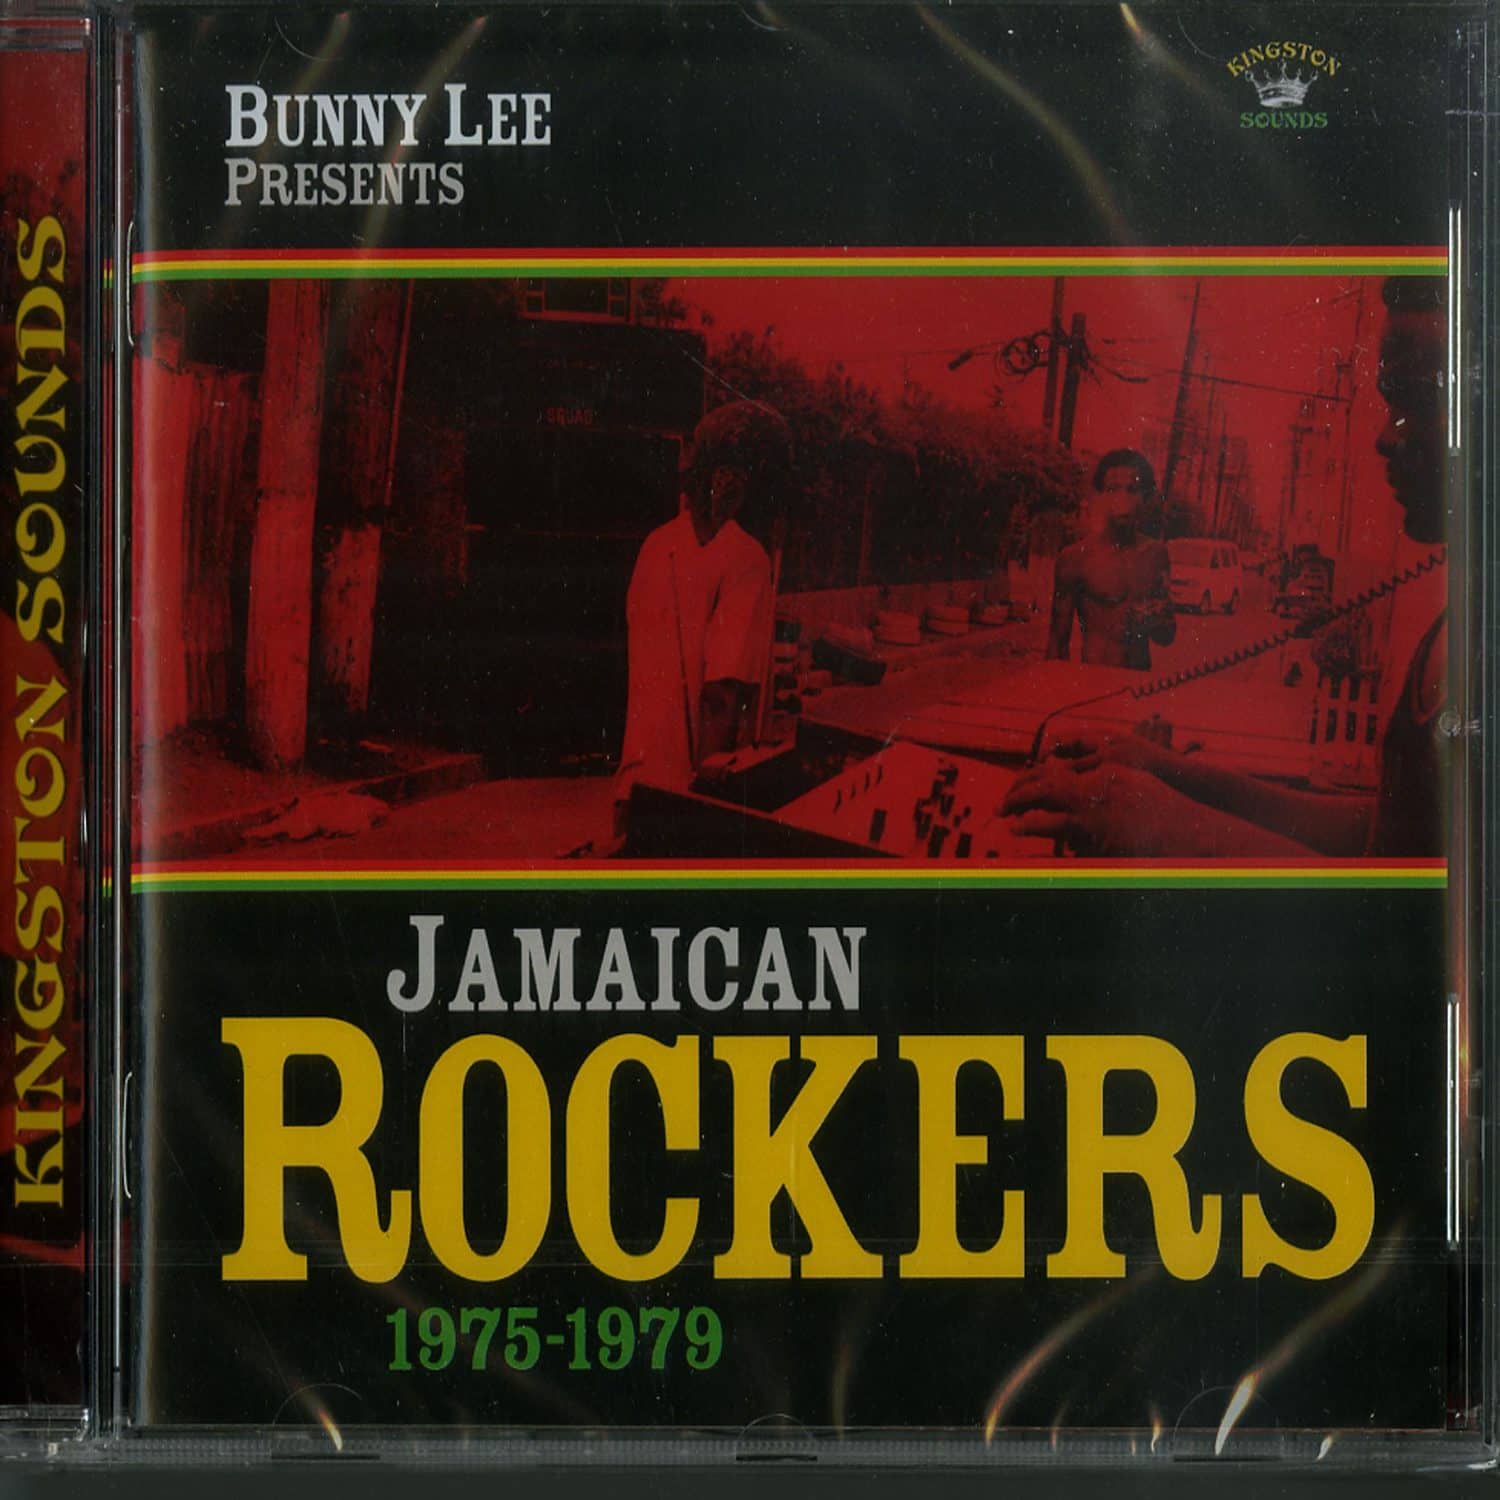 Bunny Lee Presents - JAMAICAN ROCKERS 1975 - 1979 